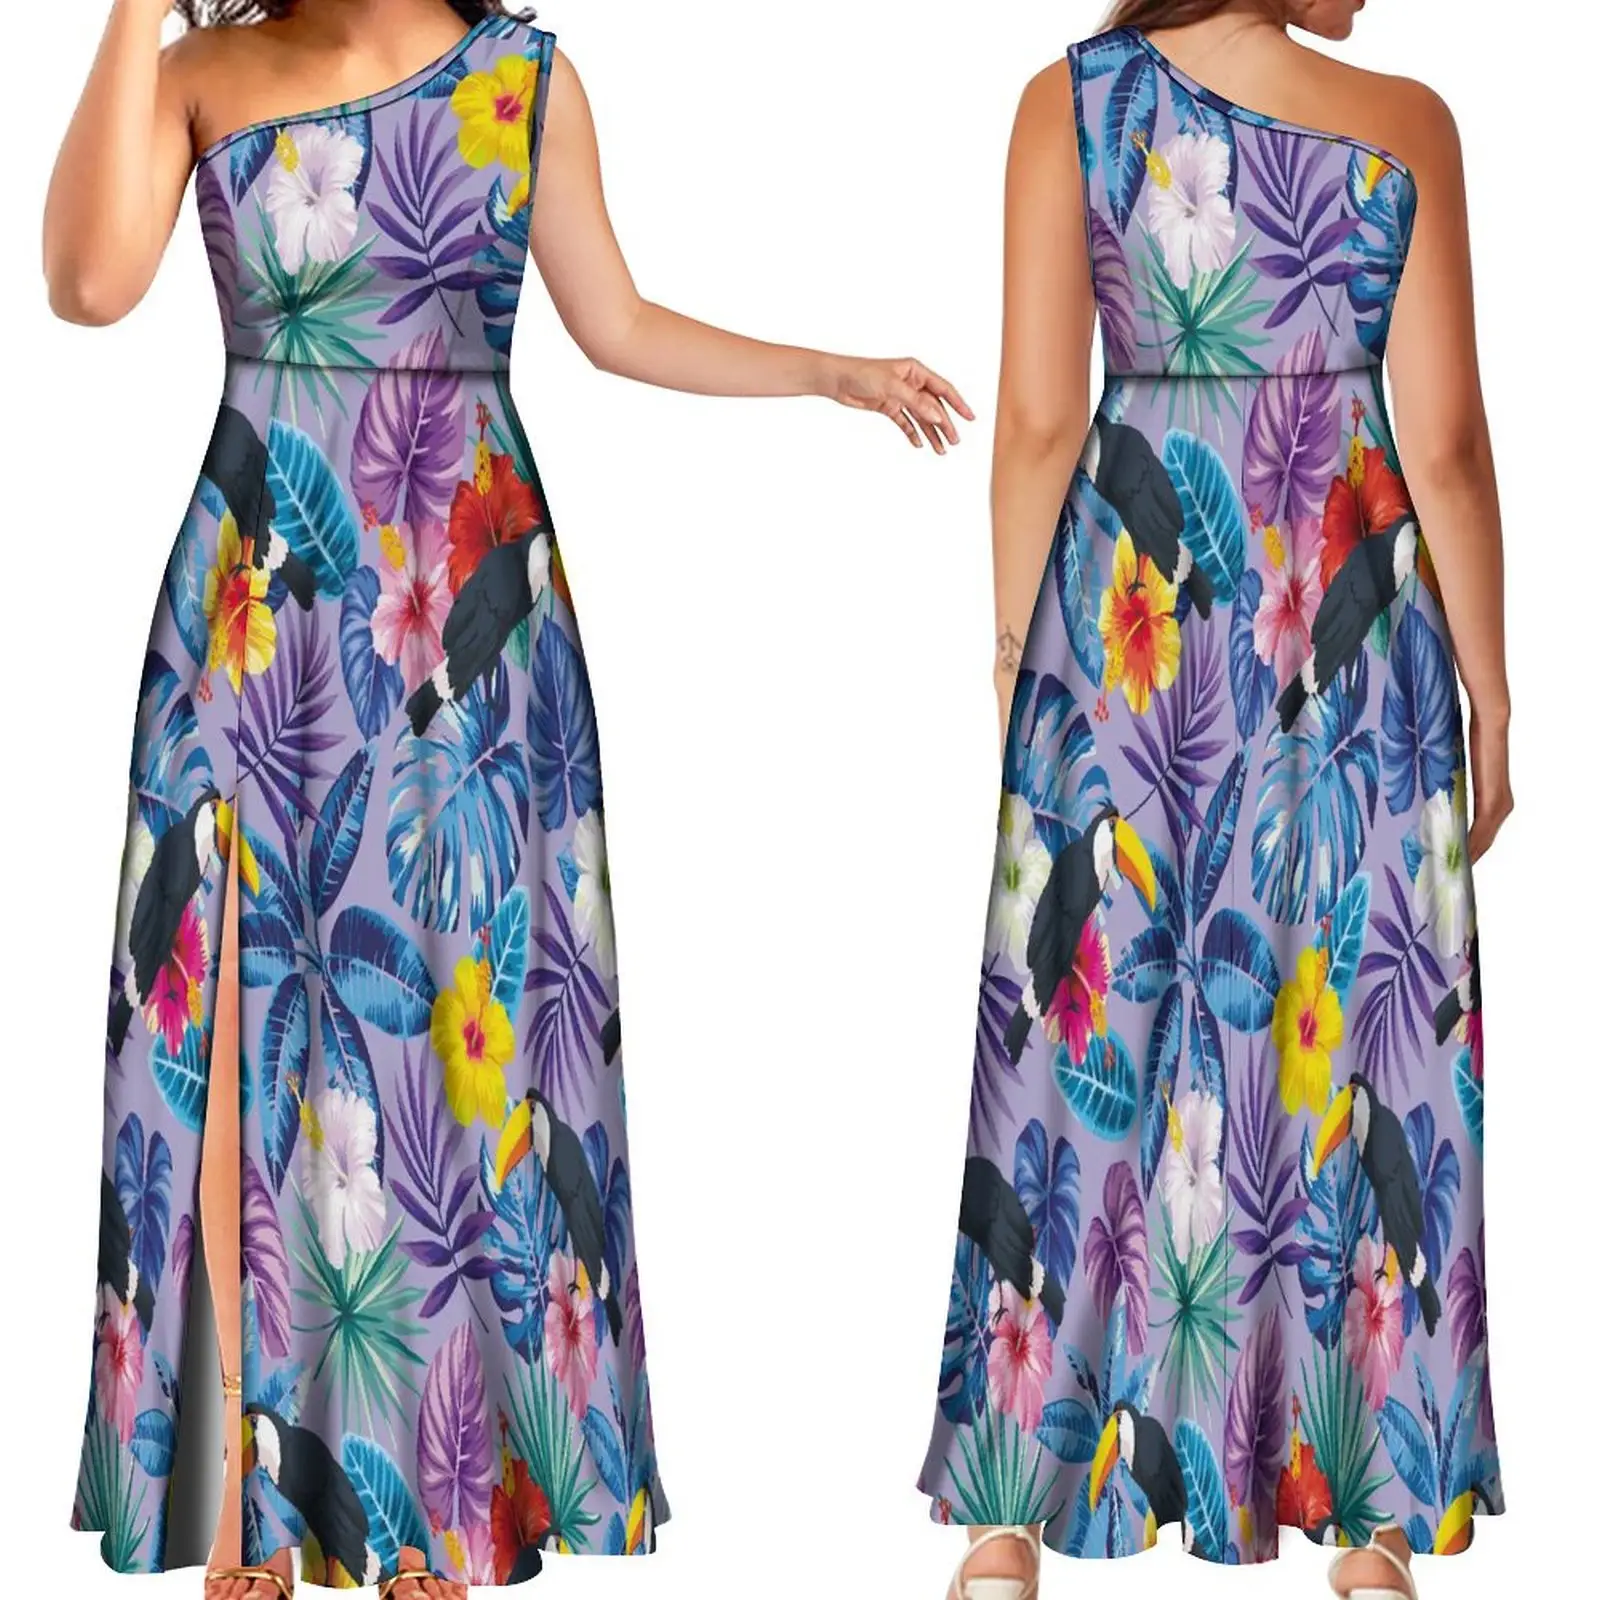 Hawaischer Stil Blumendruck elegante Dame eine Schulter ärmellose Abend-Maxi-Kleider individuelle Vestidos Übergröße Damenkleidung